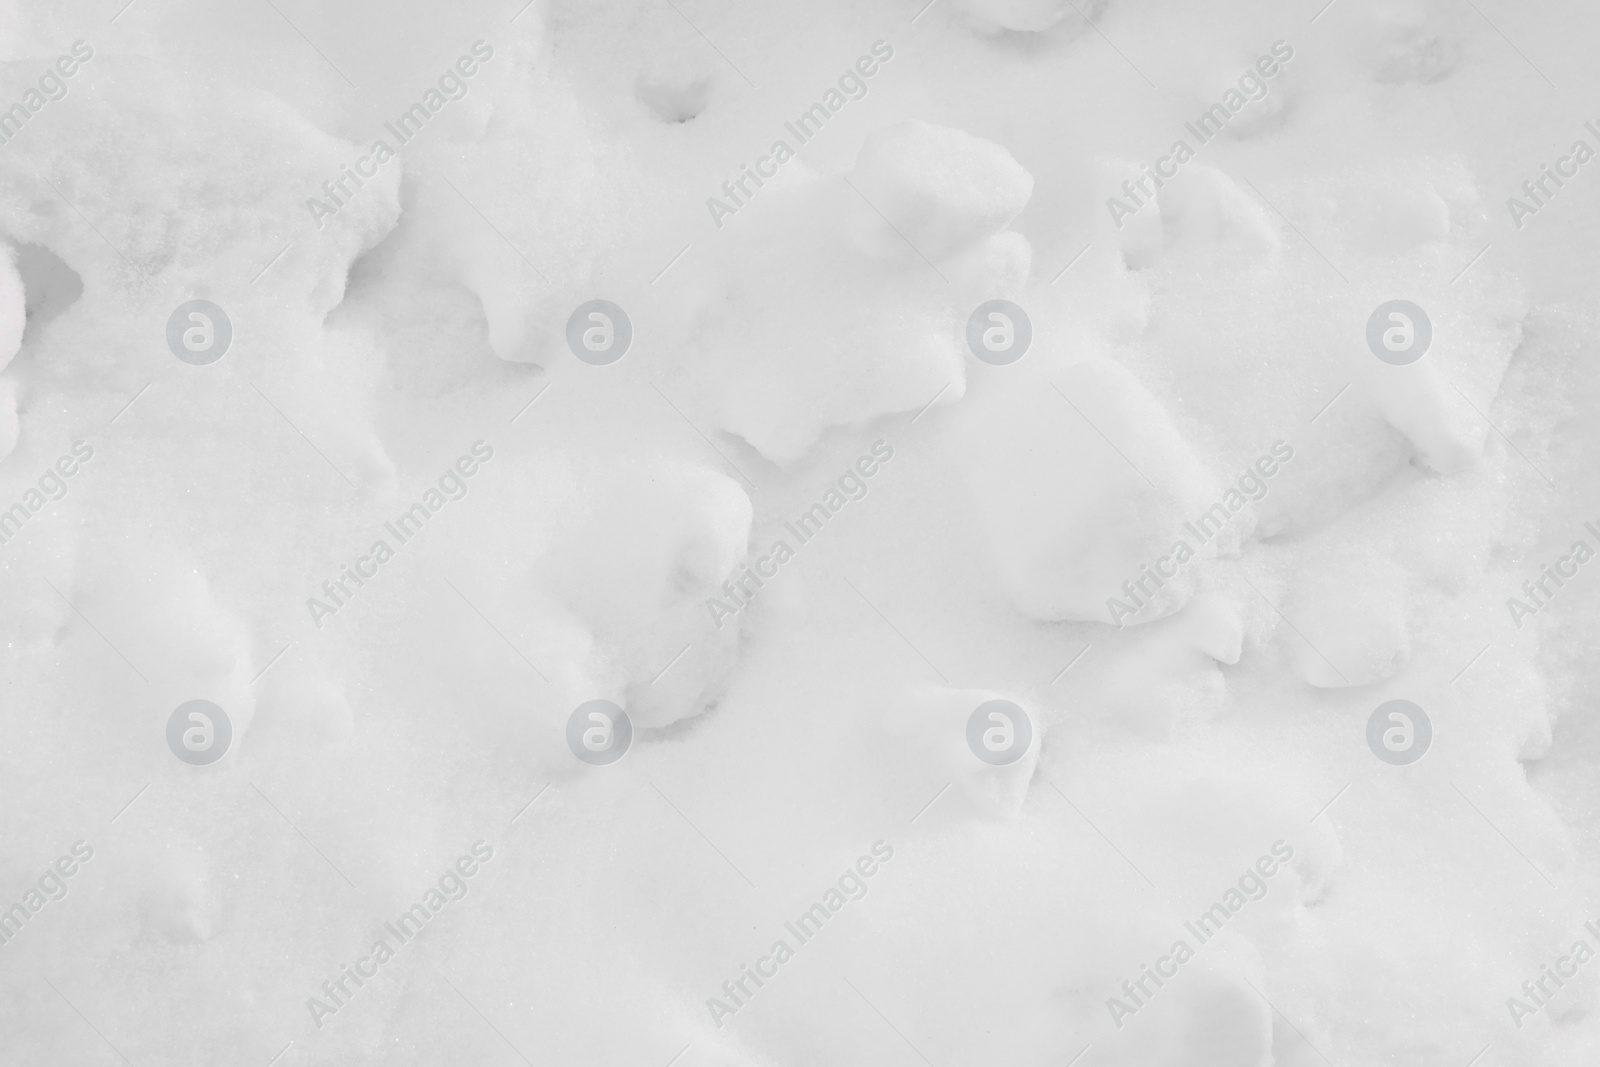 Photo of White snow as background, closeup. Winter season